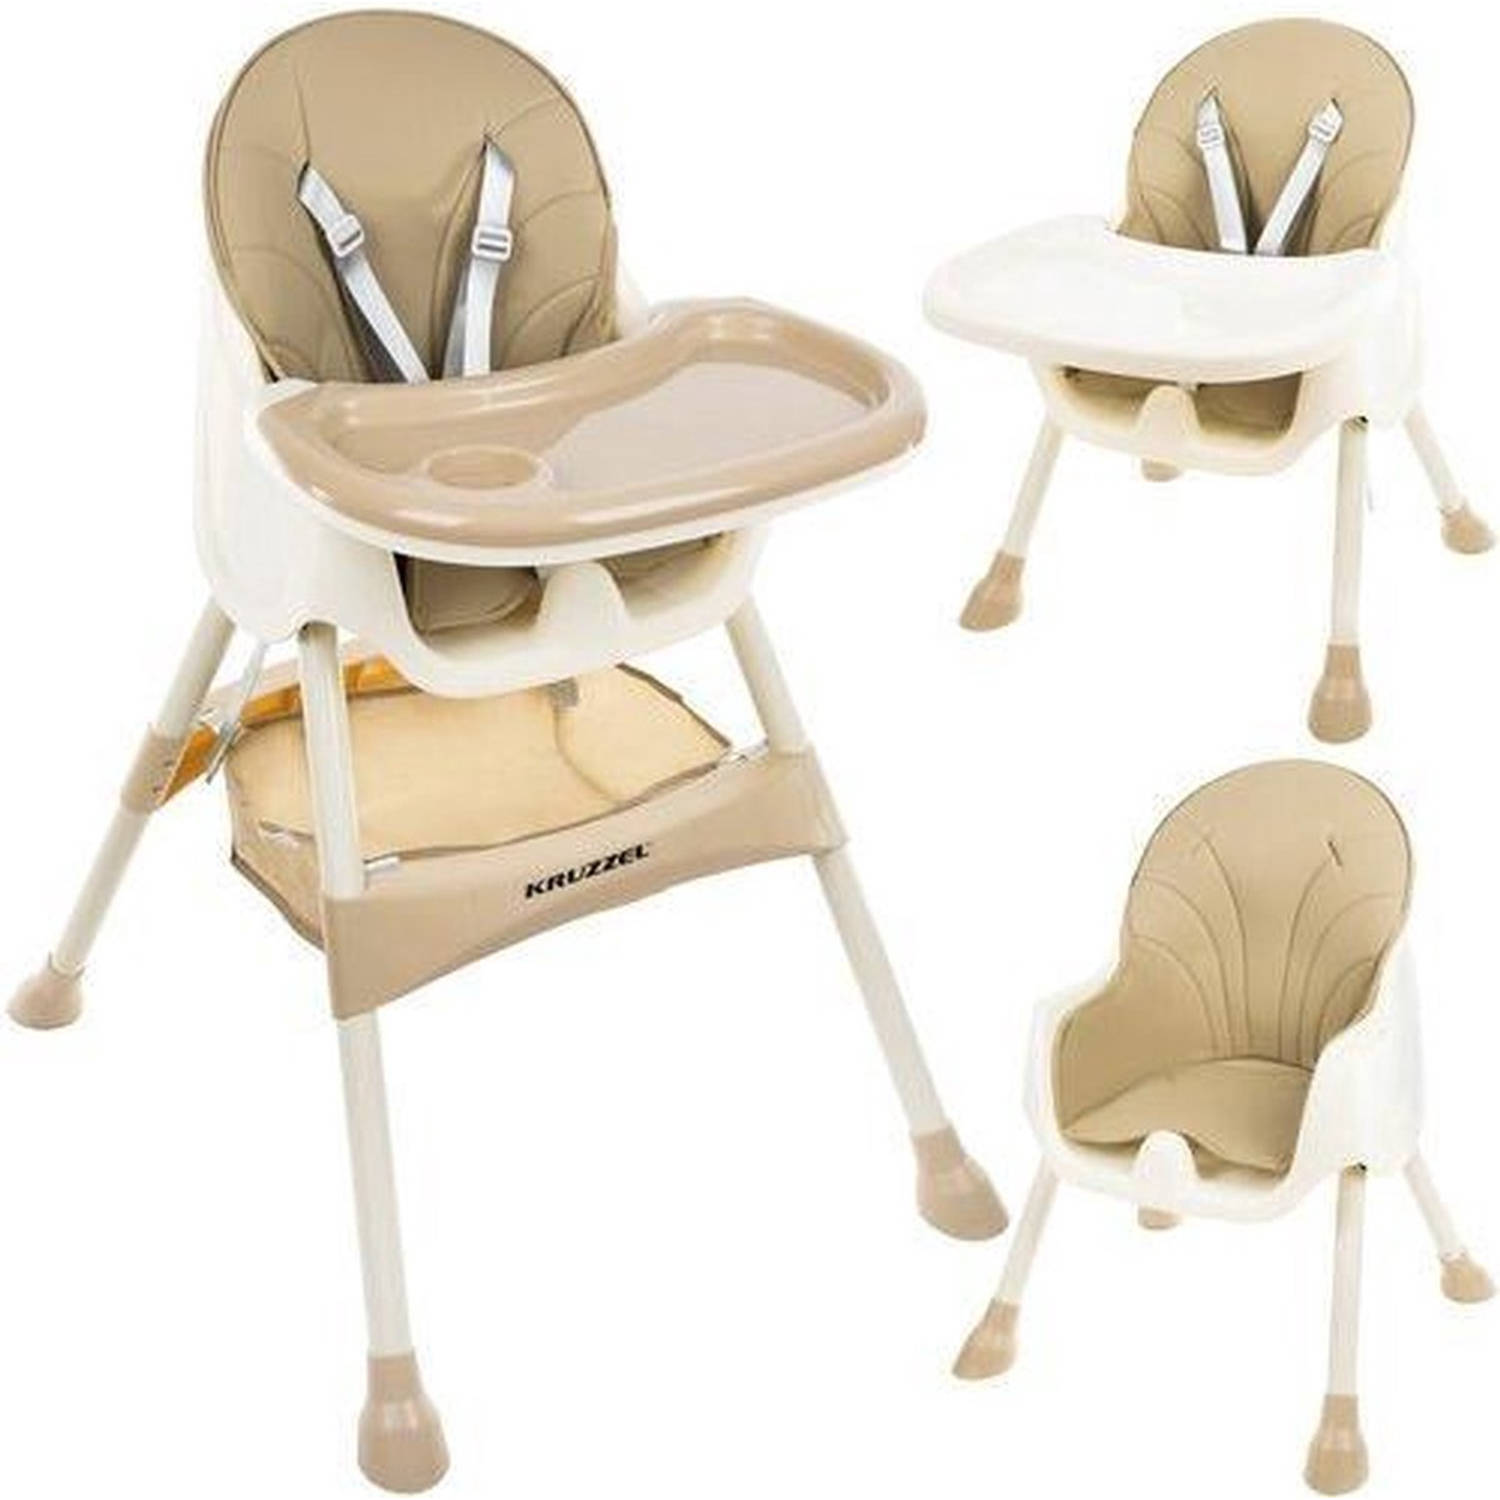 Kruzzel 3 in 1 kinderstoel met 5 punts veiligheidsgordel feeding chair beige